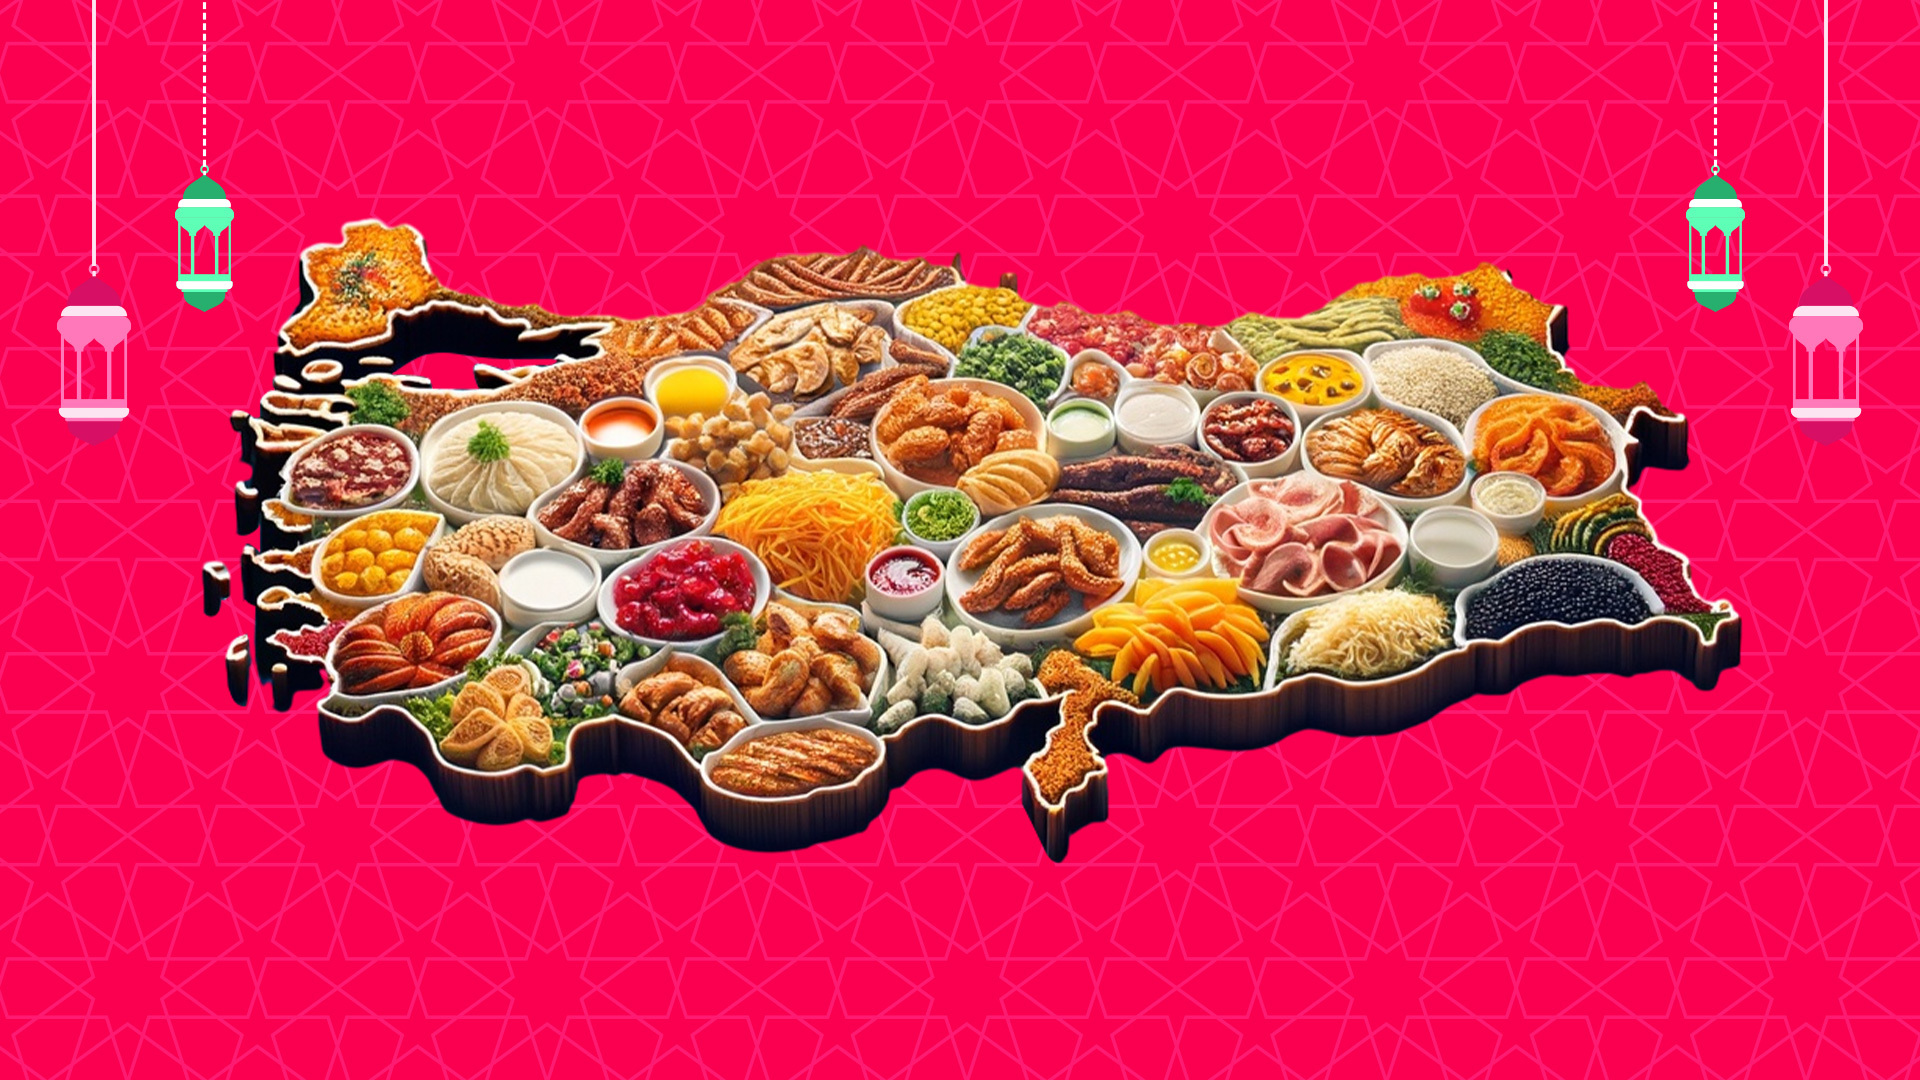 Yemeksepeti, Ramazan sofralarını cazip menü ve kampanyalarıyla donatıyor